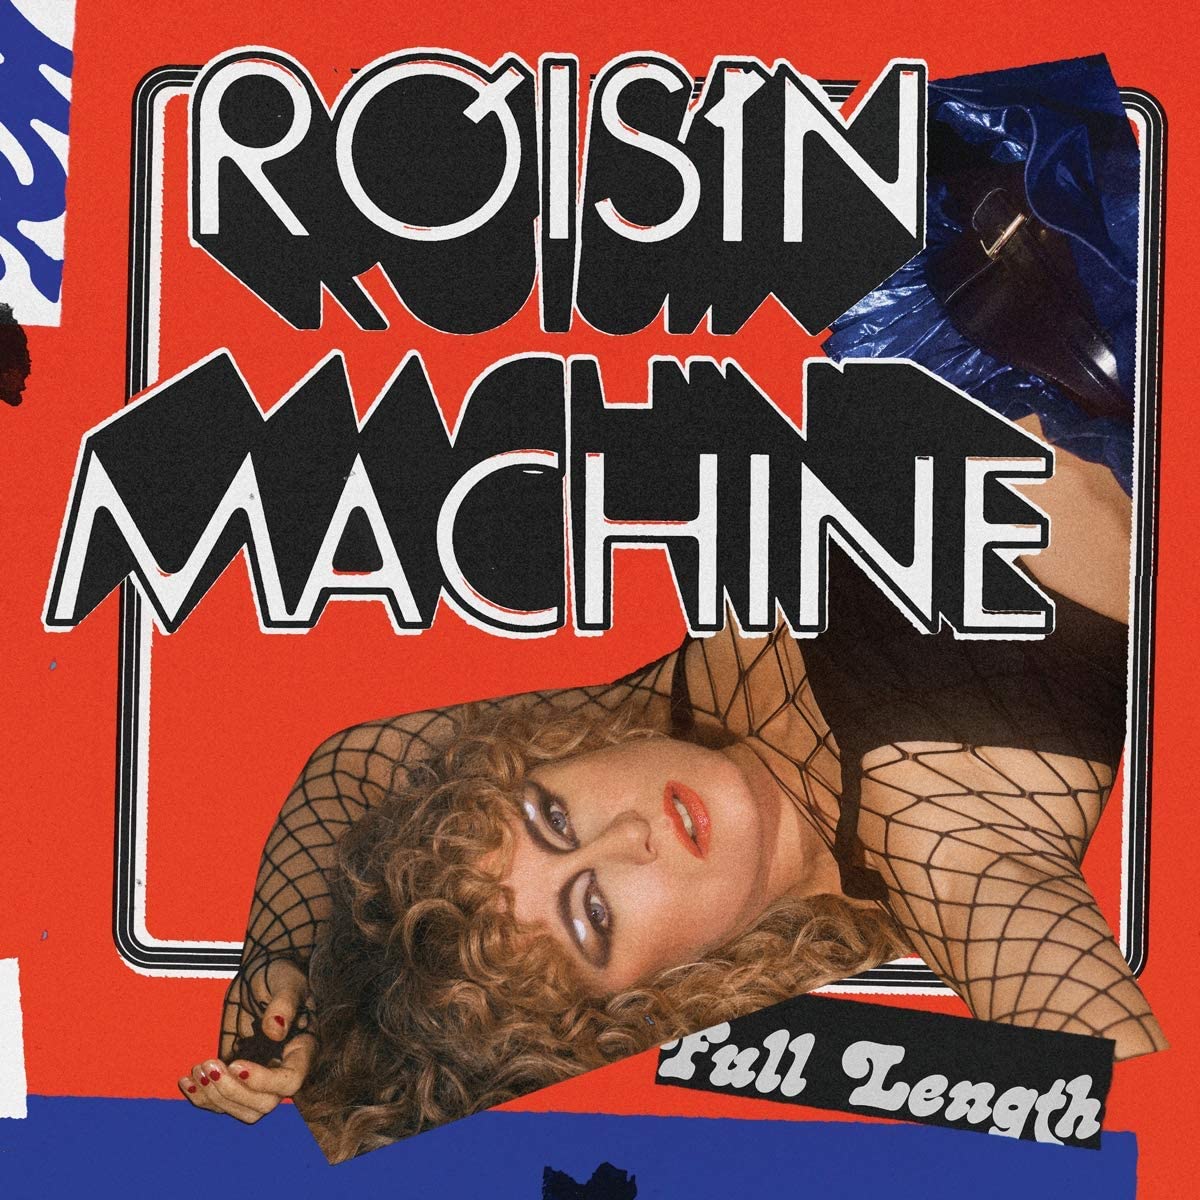 Róisín Machine migliori album del 2020 pop